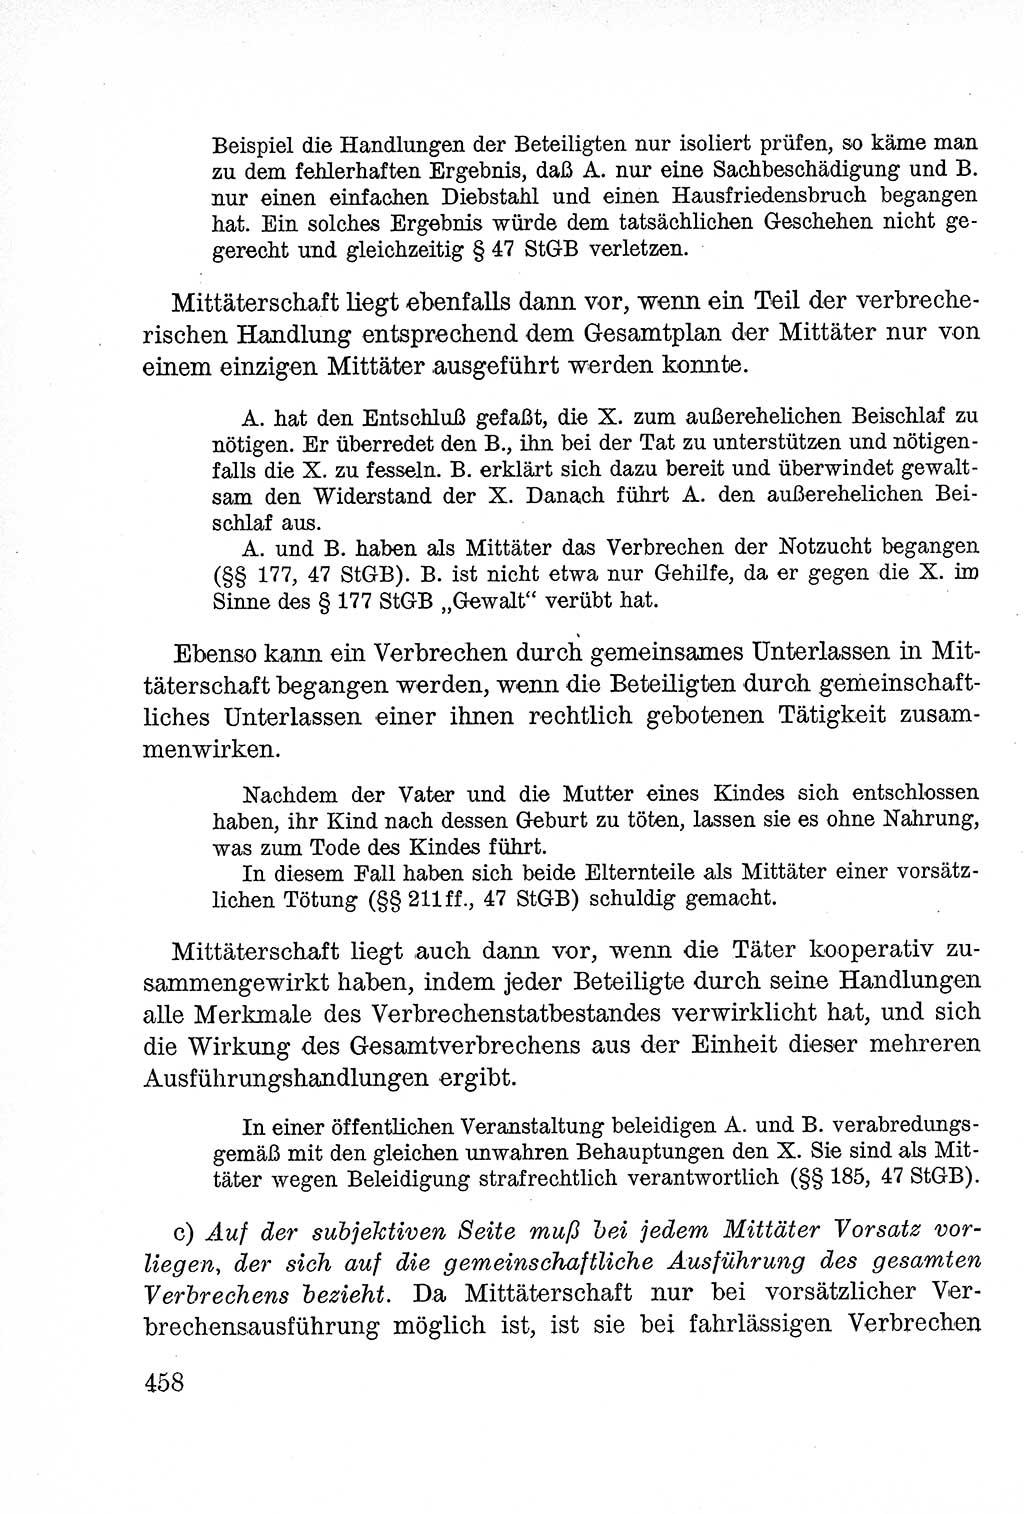 Lehrbuch des Strafrechts der Deutschen Demokratischen Republik (DDR), Allgemeiner Teil 1957, Seite 458 (Lb. Strafr. DDR AT 1957, S. 458)